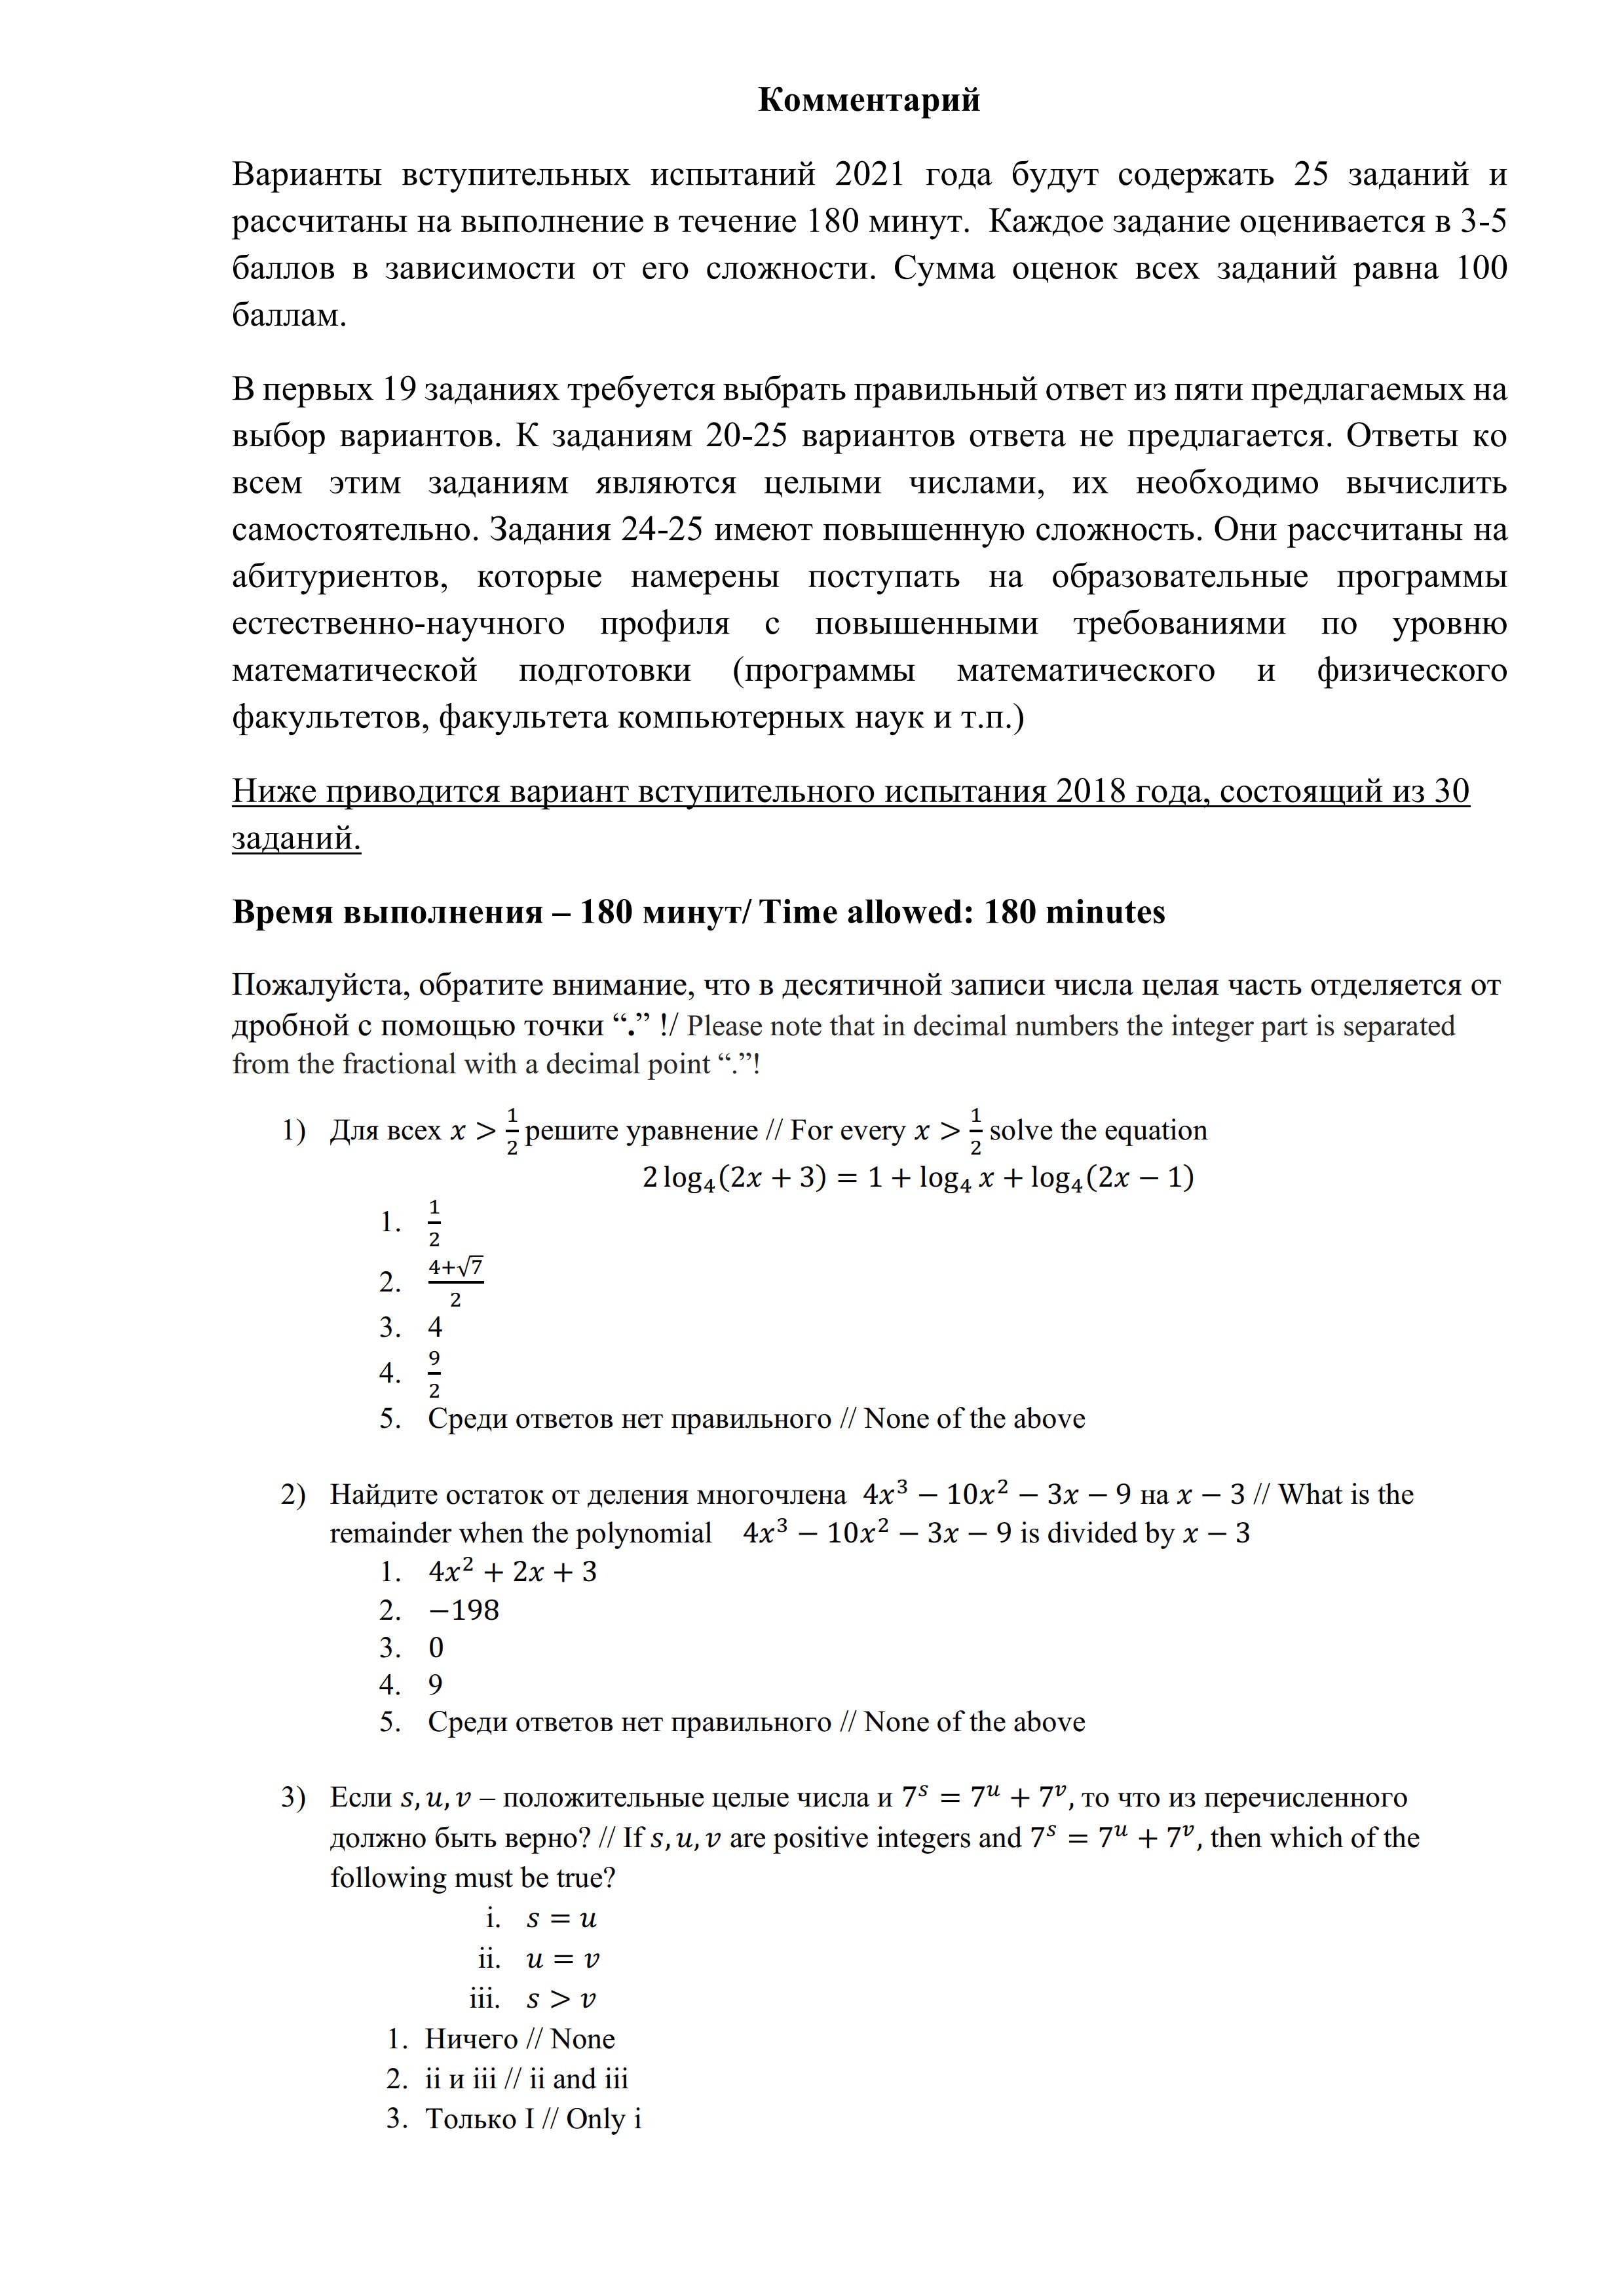 俄罗斯大学入学考试数学真题|俄罗斯留学|俄罗斯大学